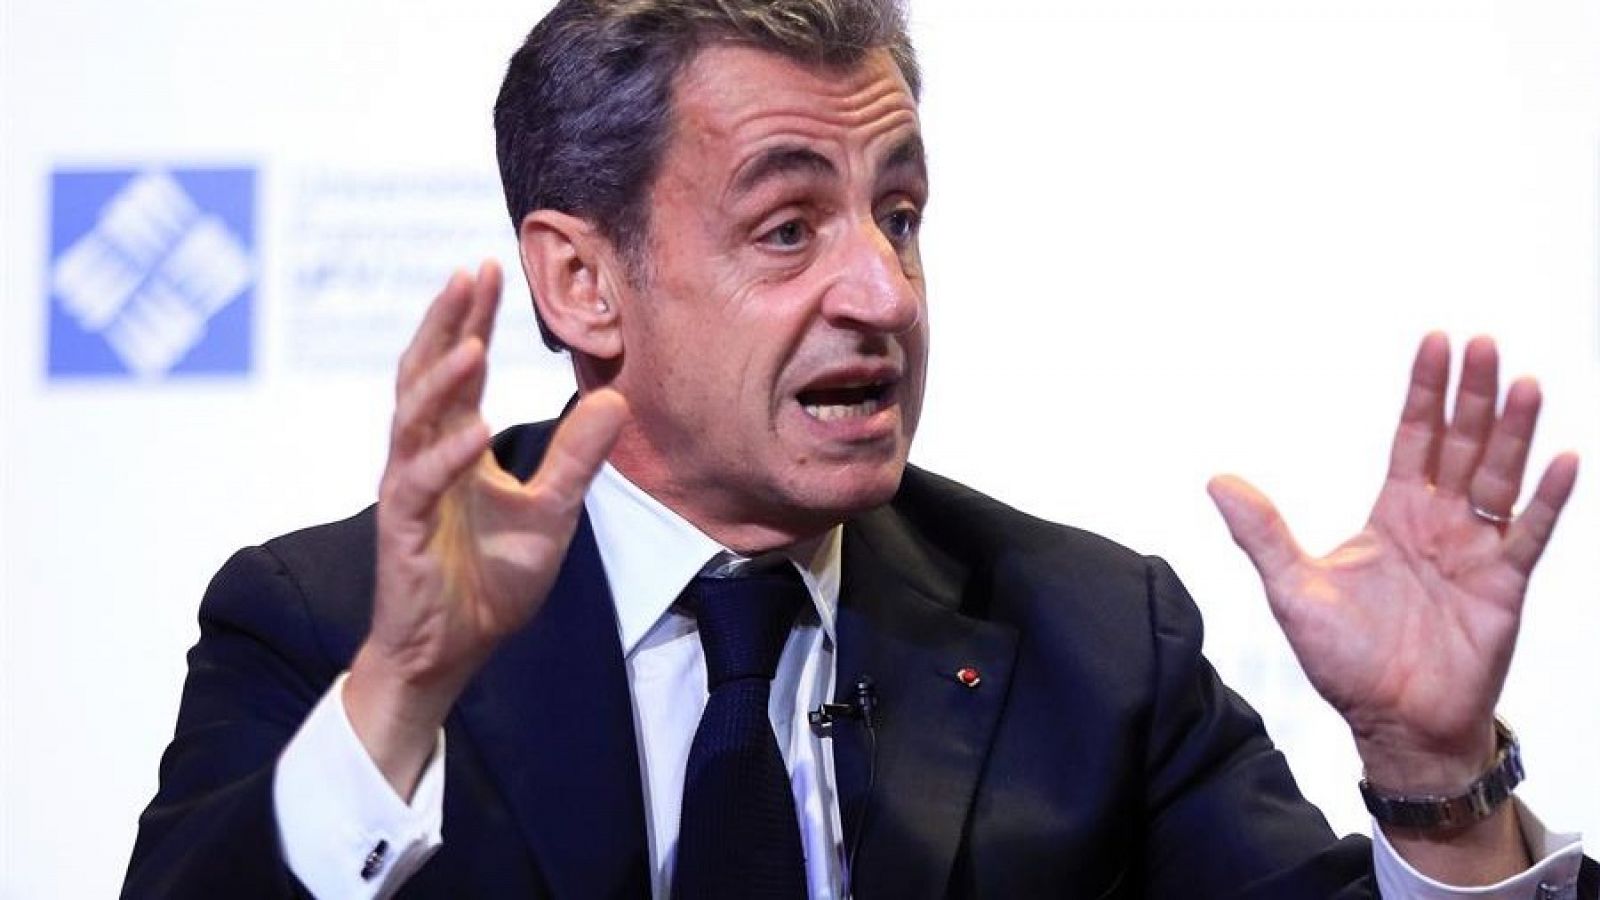 Nicolás Sarkozy presidió Francia entre 2007 y 2012.